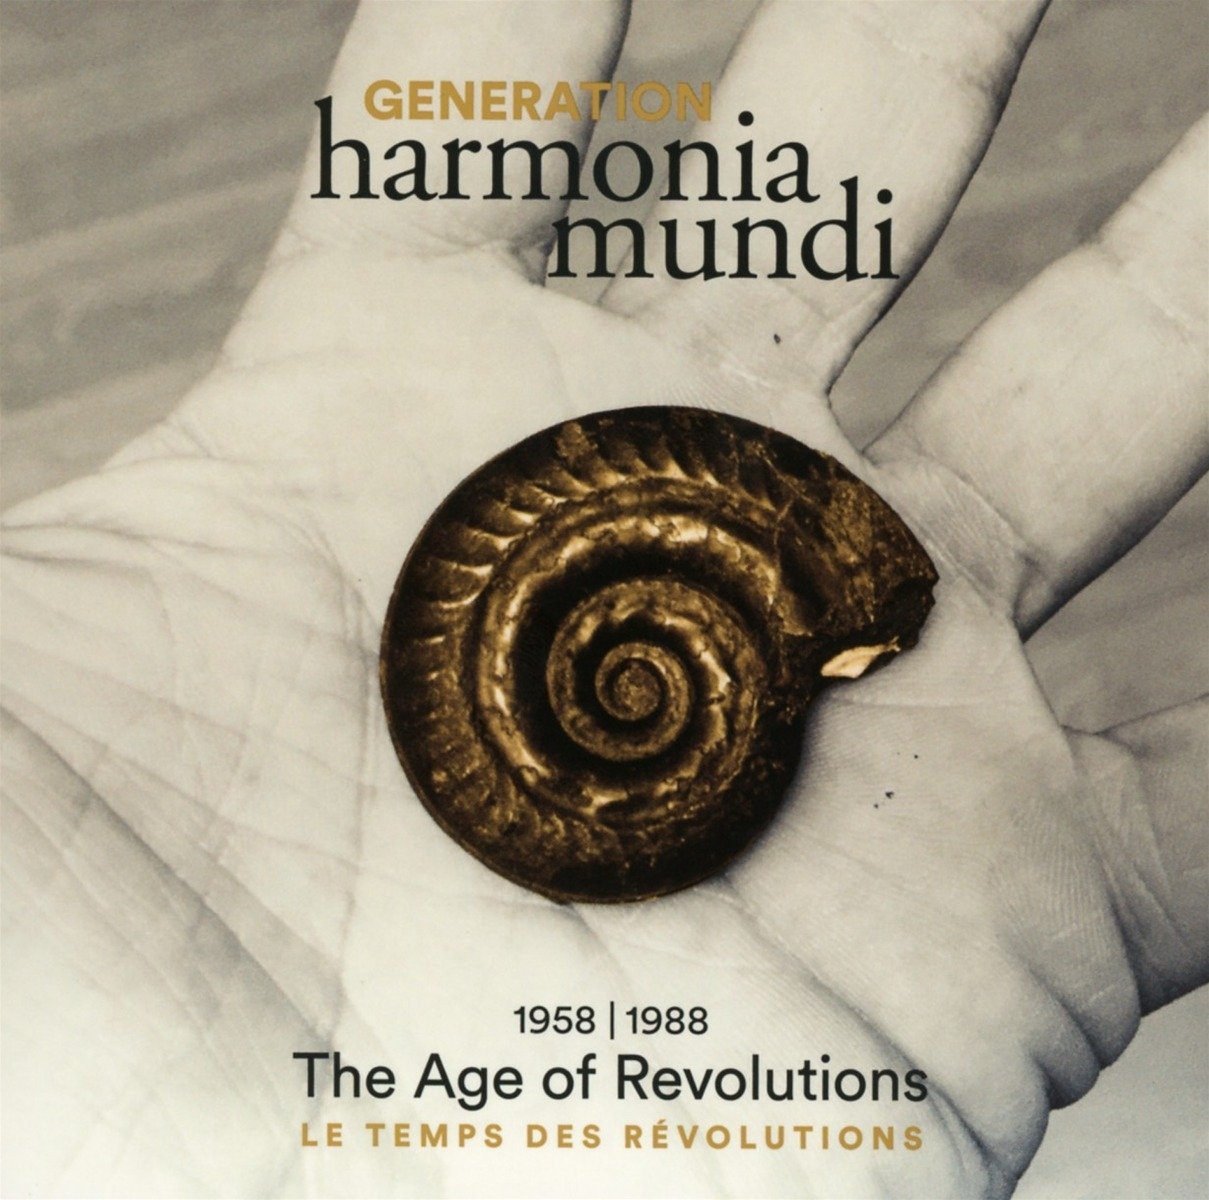 하모니아 문디 60주년 기념 박스 1집 [1958-1988 혁명의 시대] (Generation harmonia mundi - 1. The Age of Revolutions)